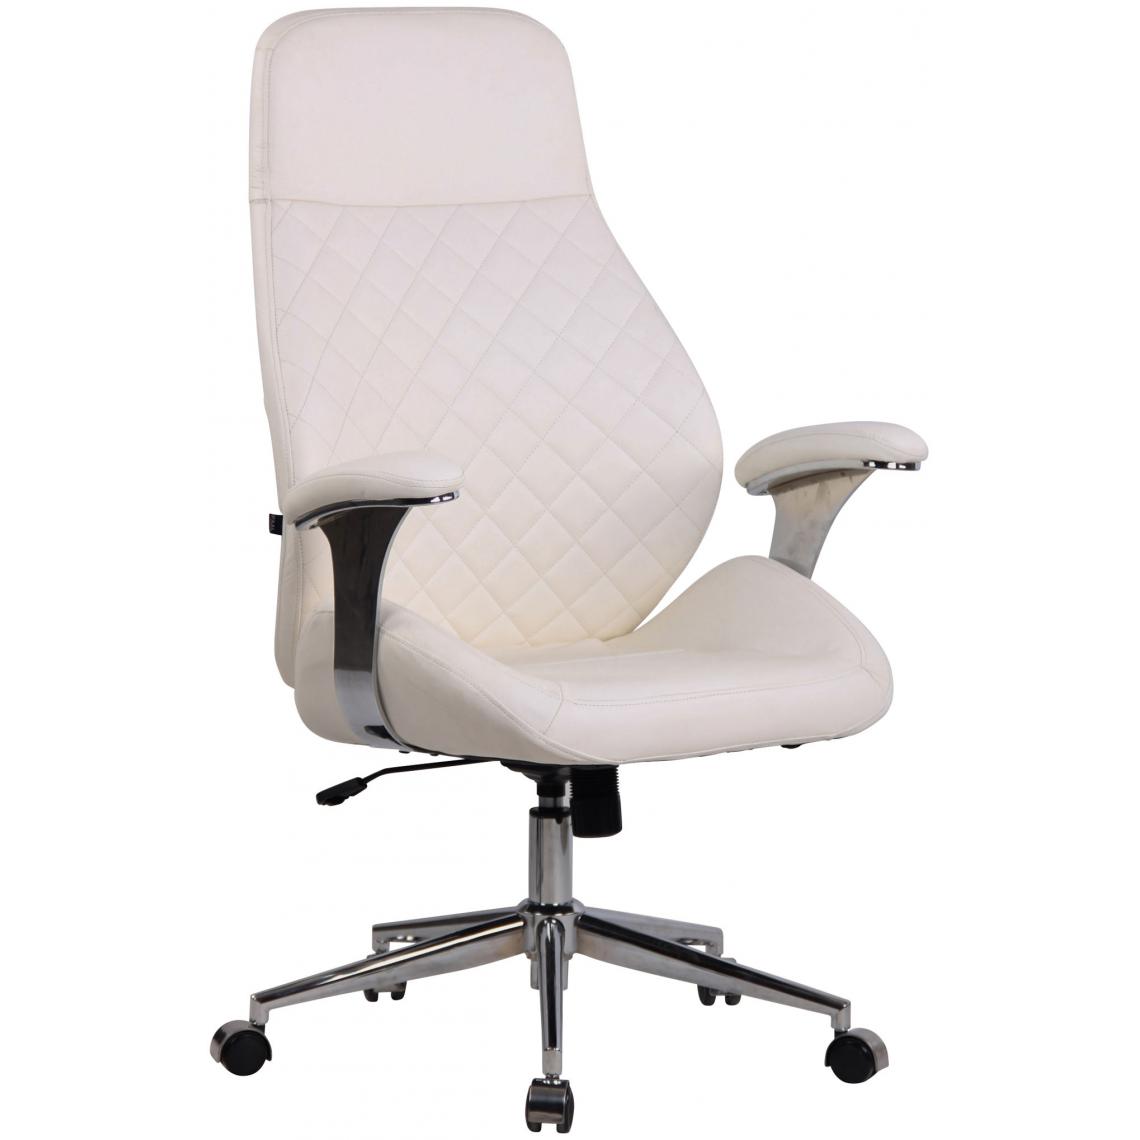 Icaverne - Joli Chaise de bureau selection Tbilissi cuir véritable couleur blanc - Chaises